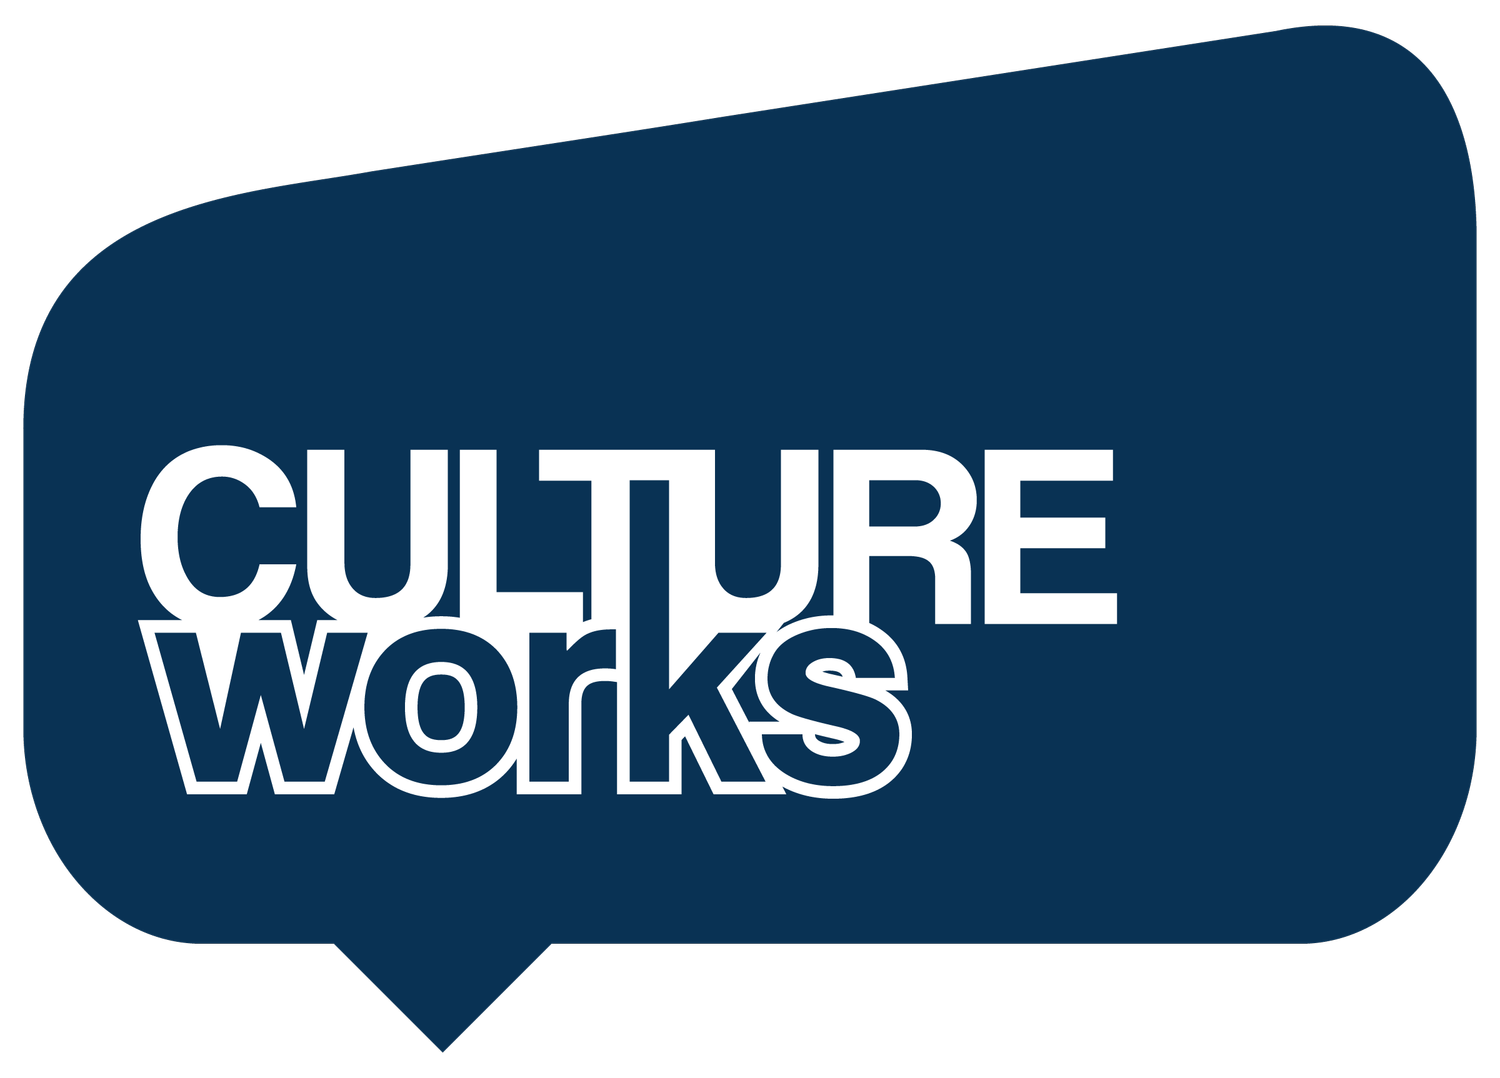 CultureWorks